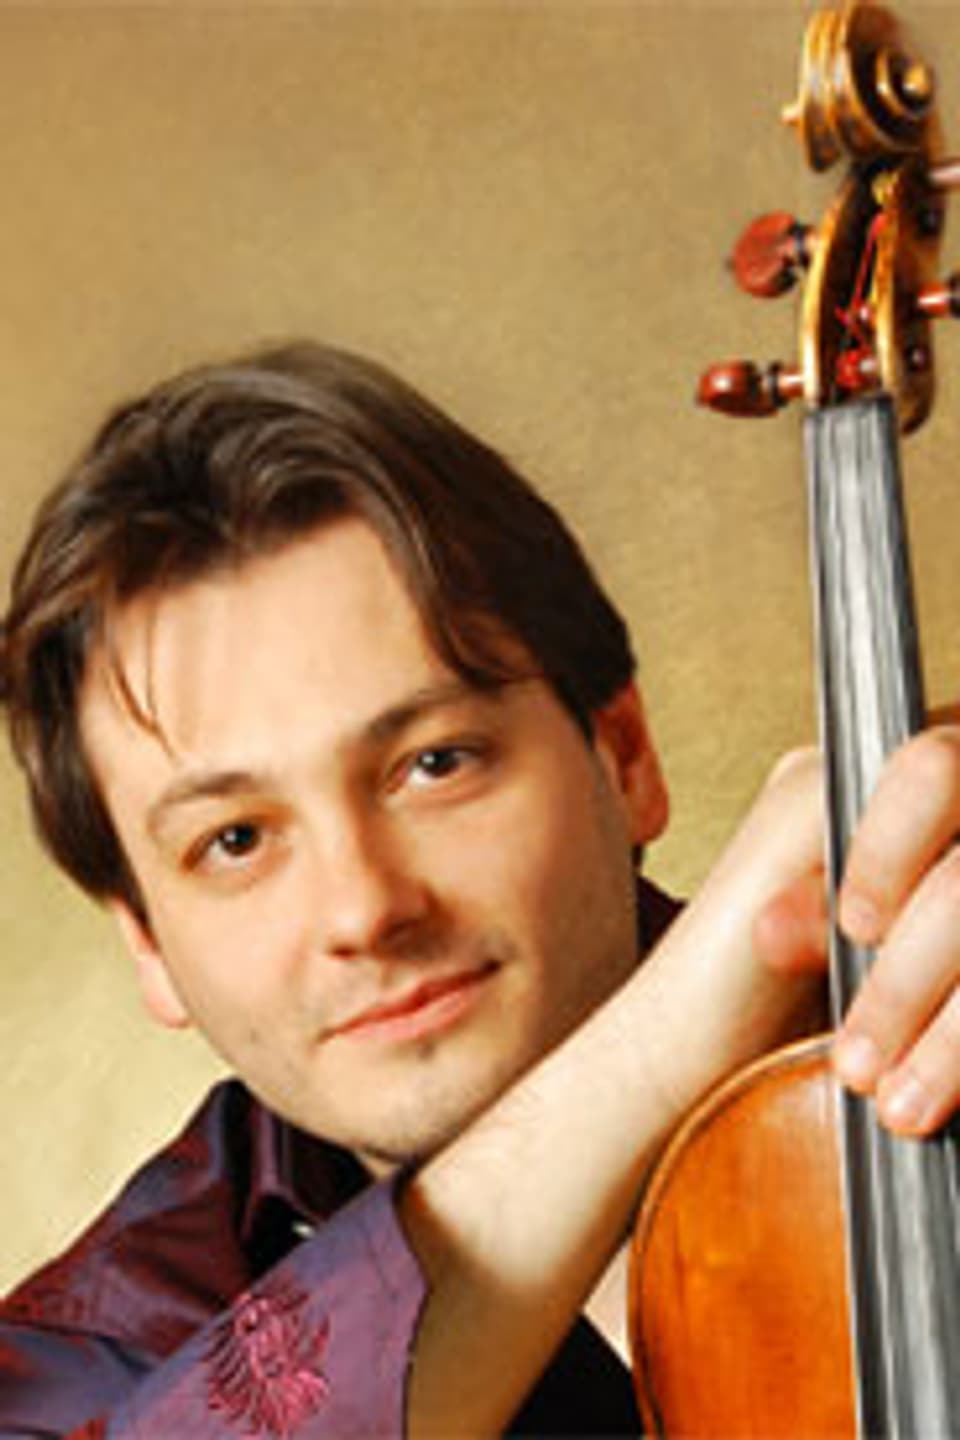 Maxim Rysanov spielt eine Guadagnini-Viola von 1780.